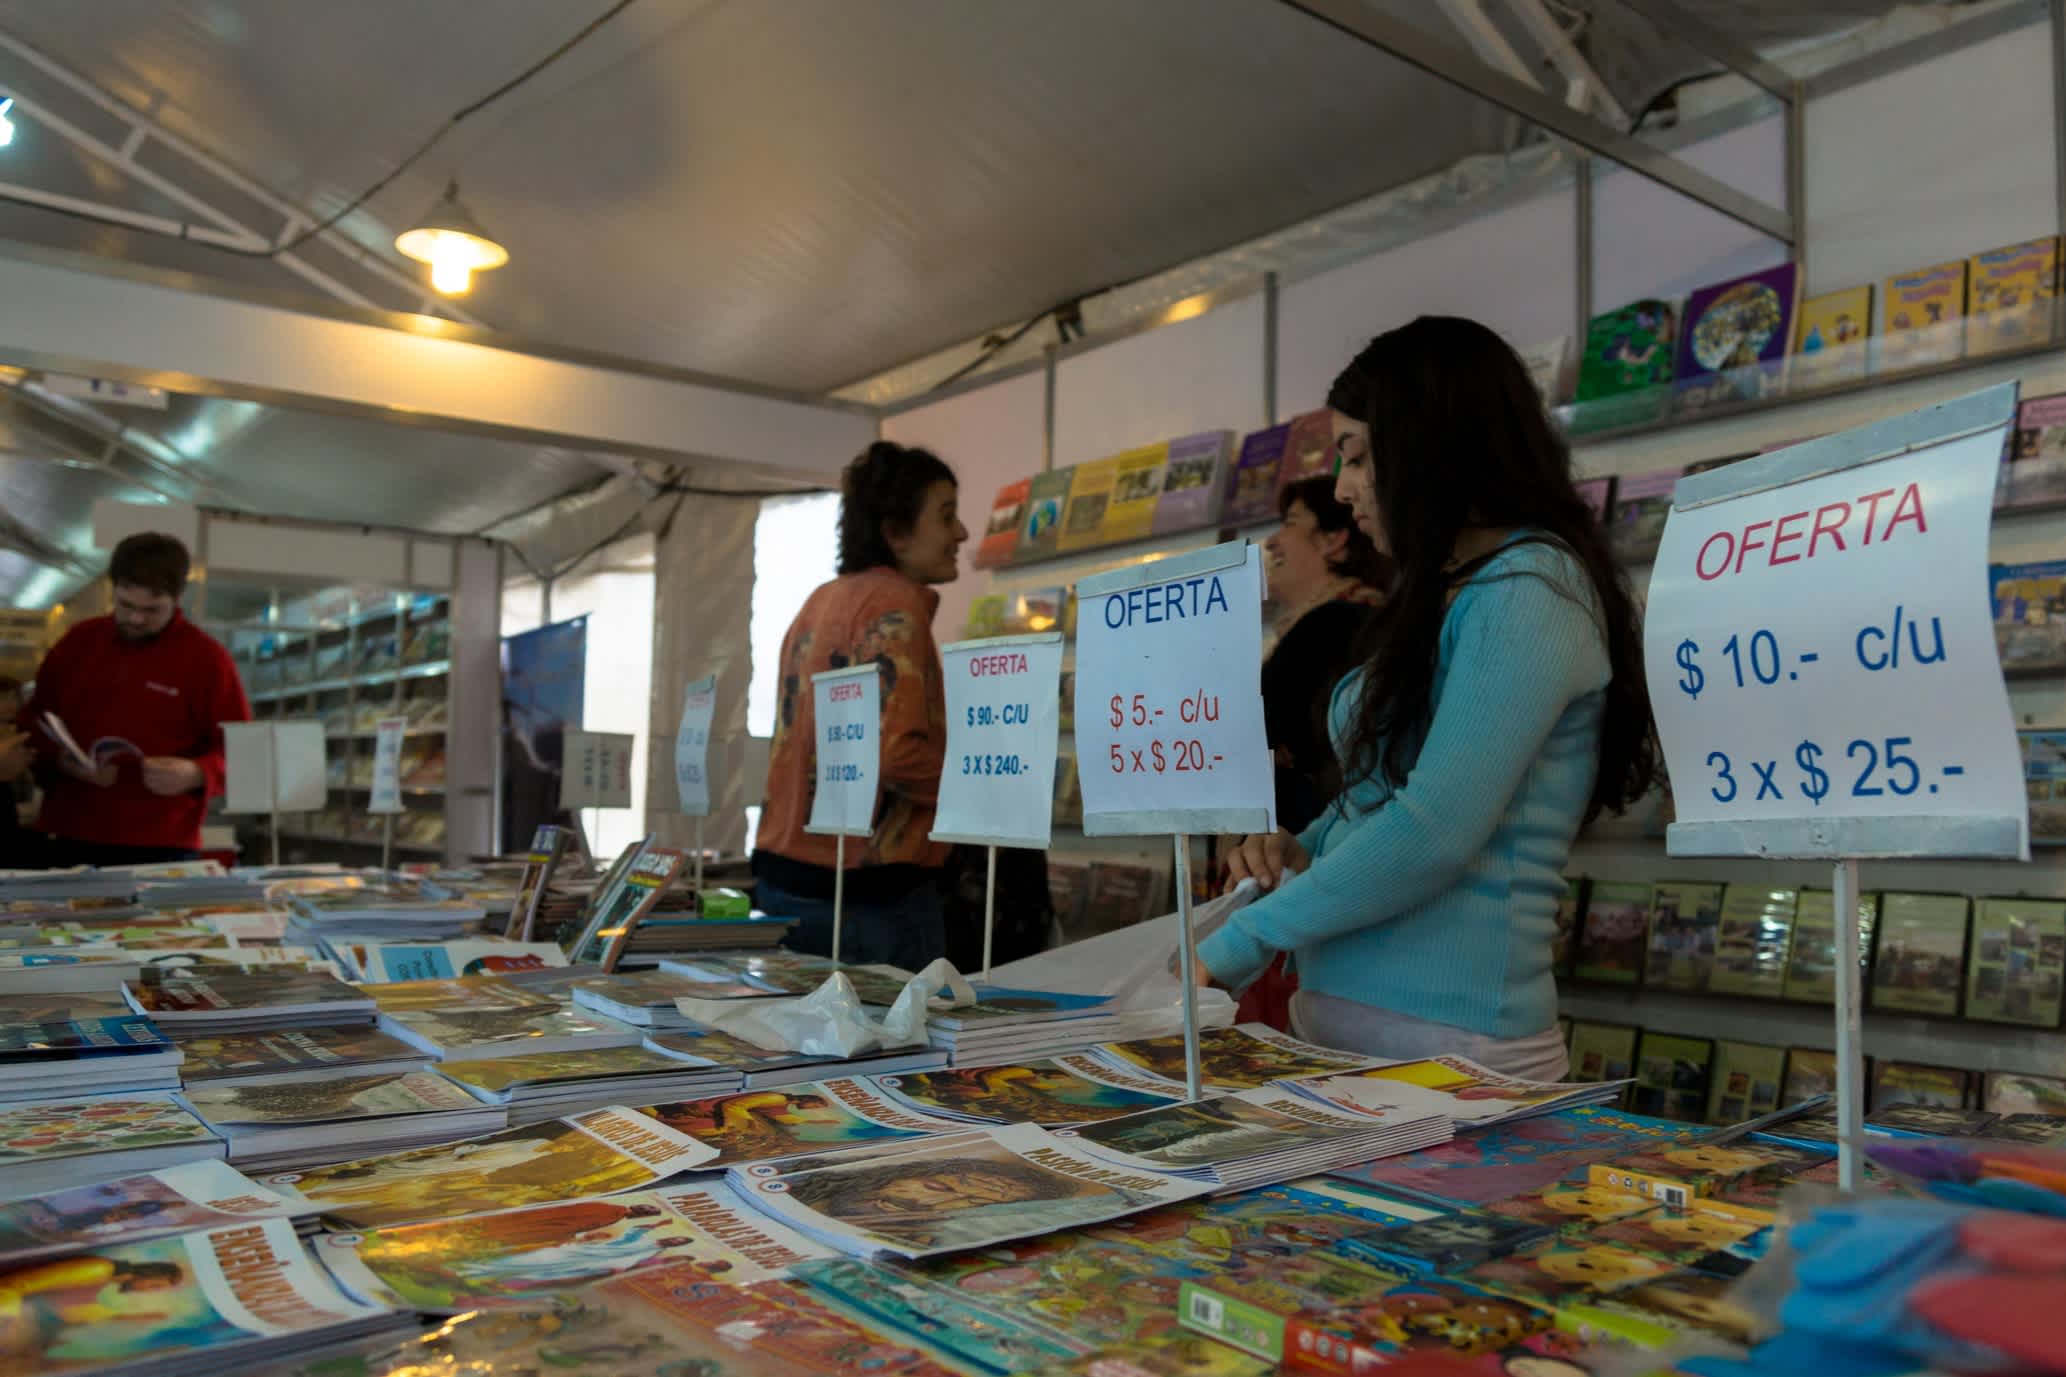 Messestand auf einer Buchmesse mit Preisschildern